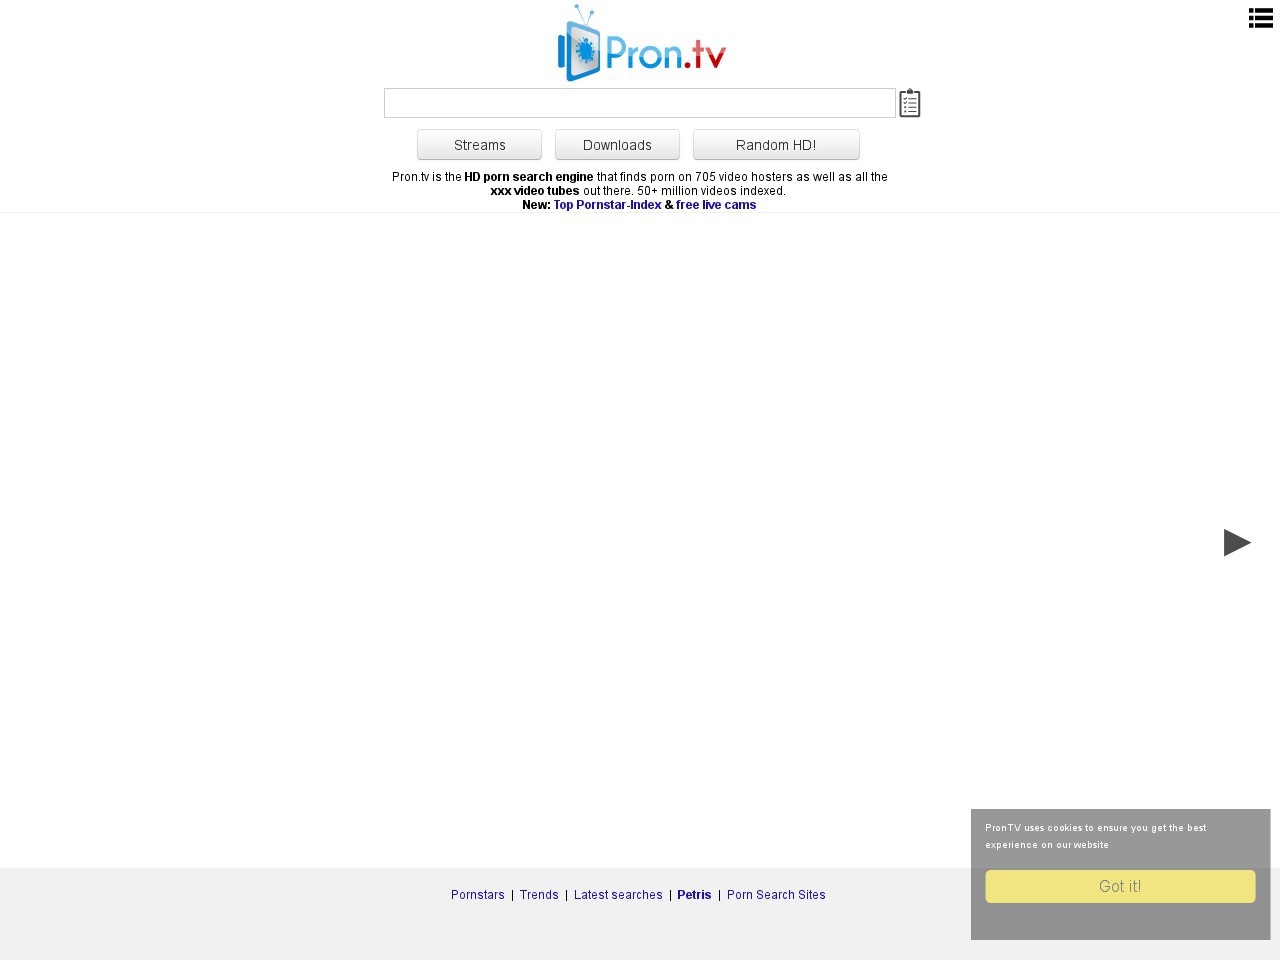 1280px x 960px - Pron.tv - pron.tv - Porn Search Site - PornFrost